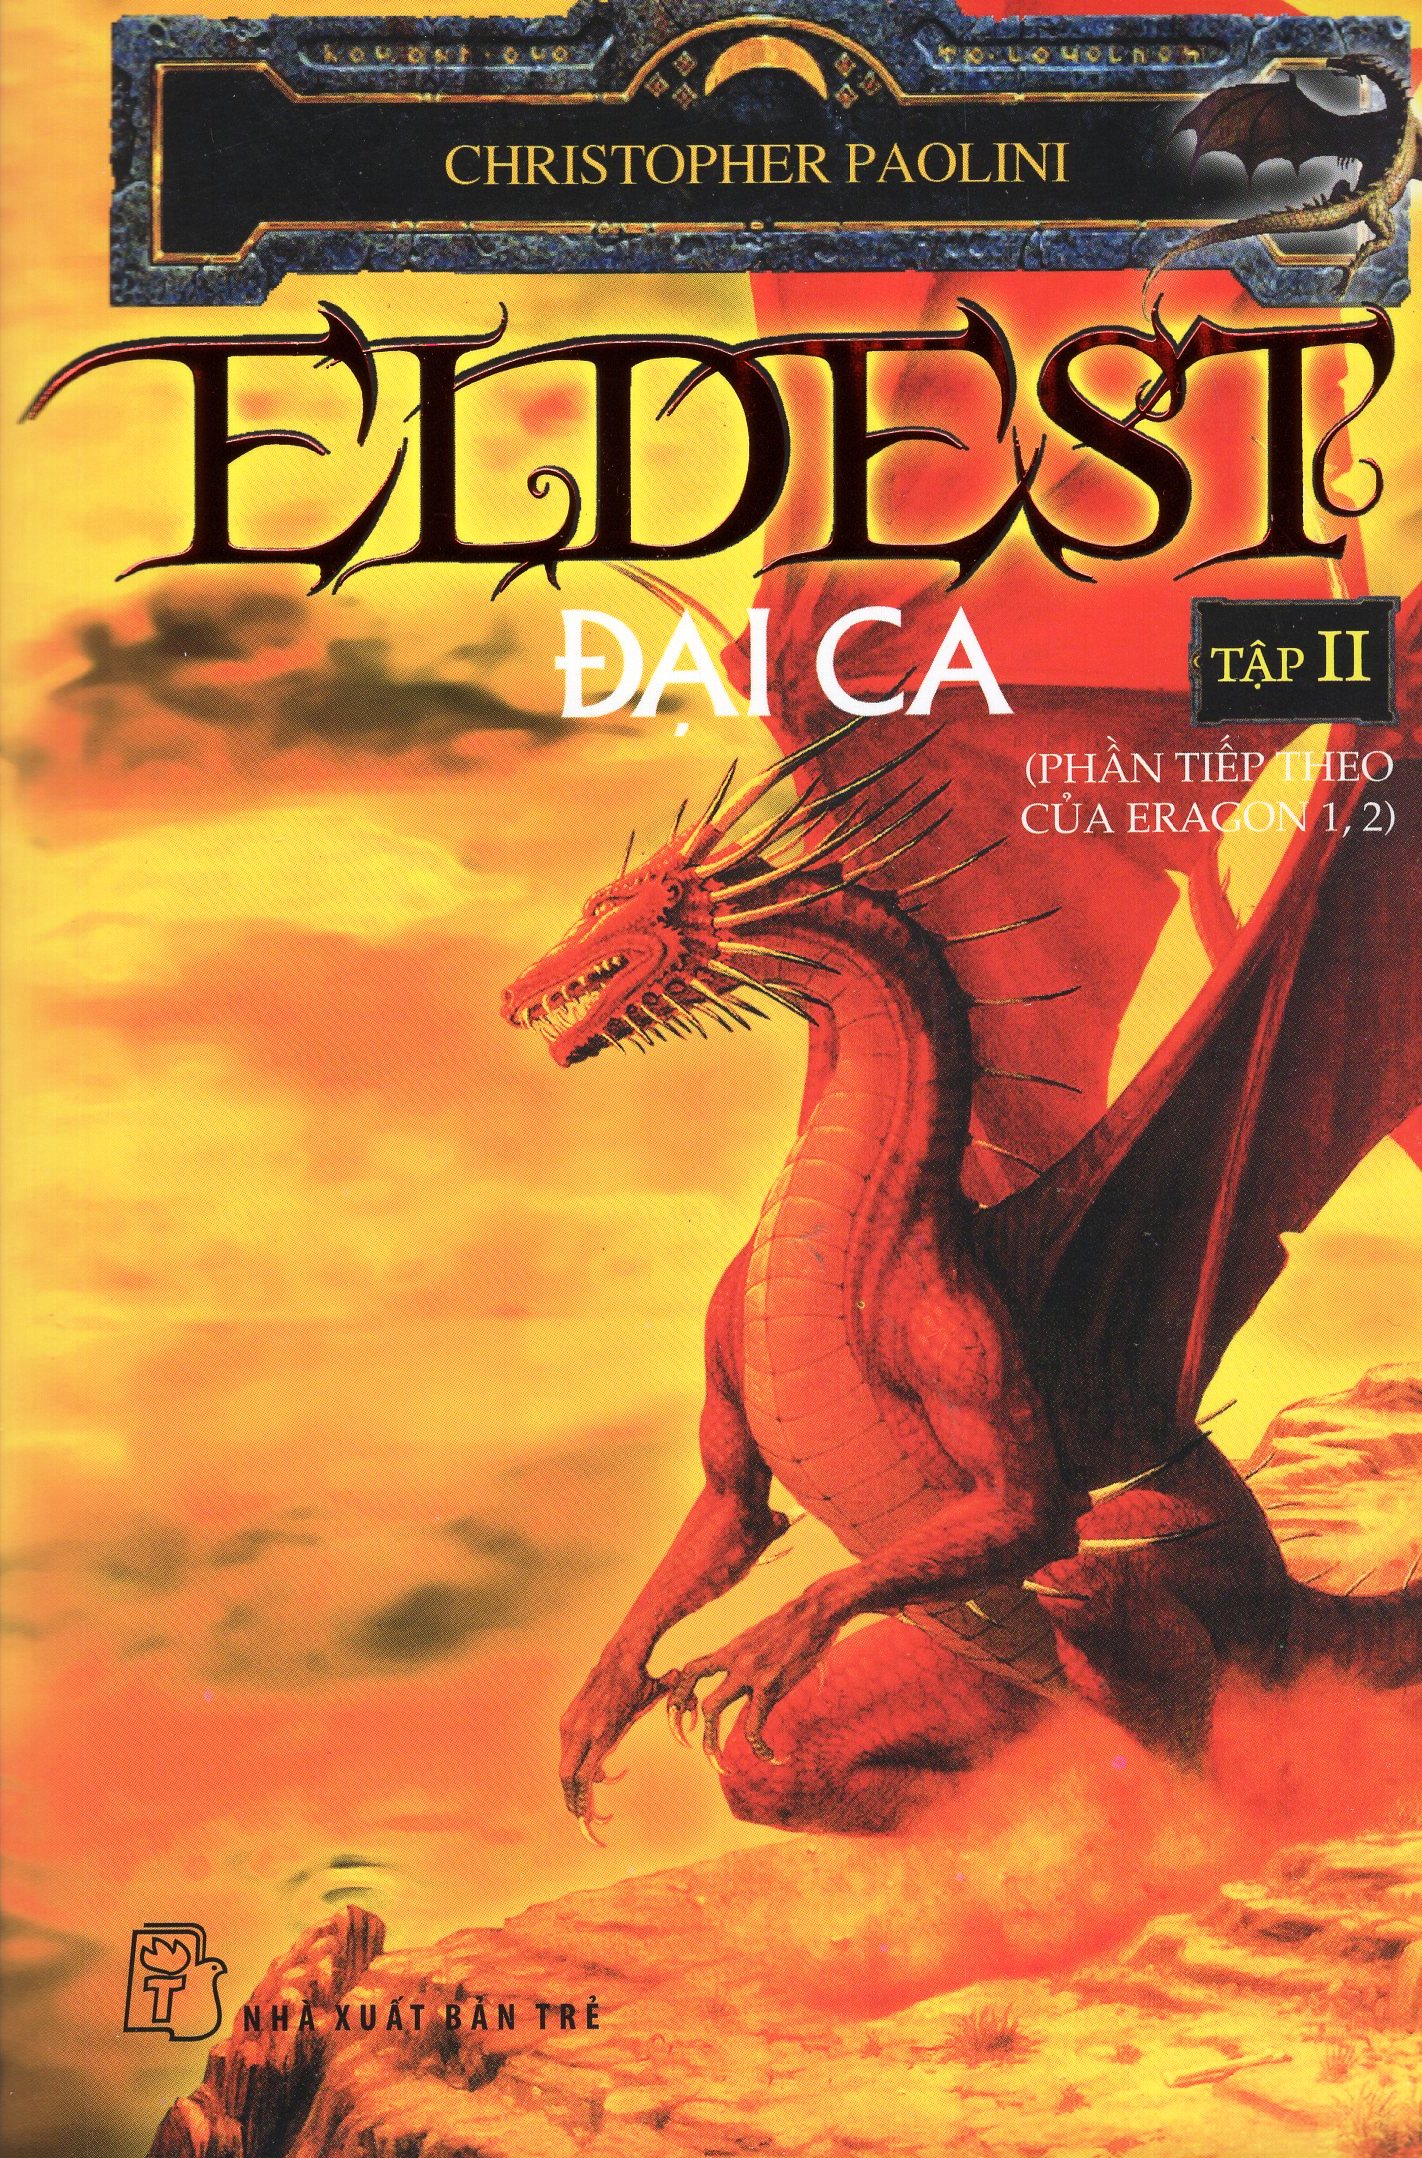 Bìa sách Eragon 2 (Eldest) - Đại Ca (Tập 2)